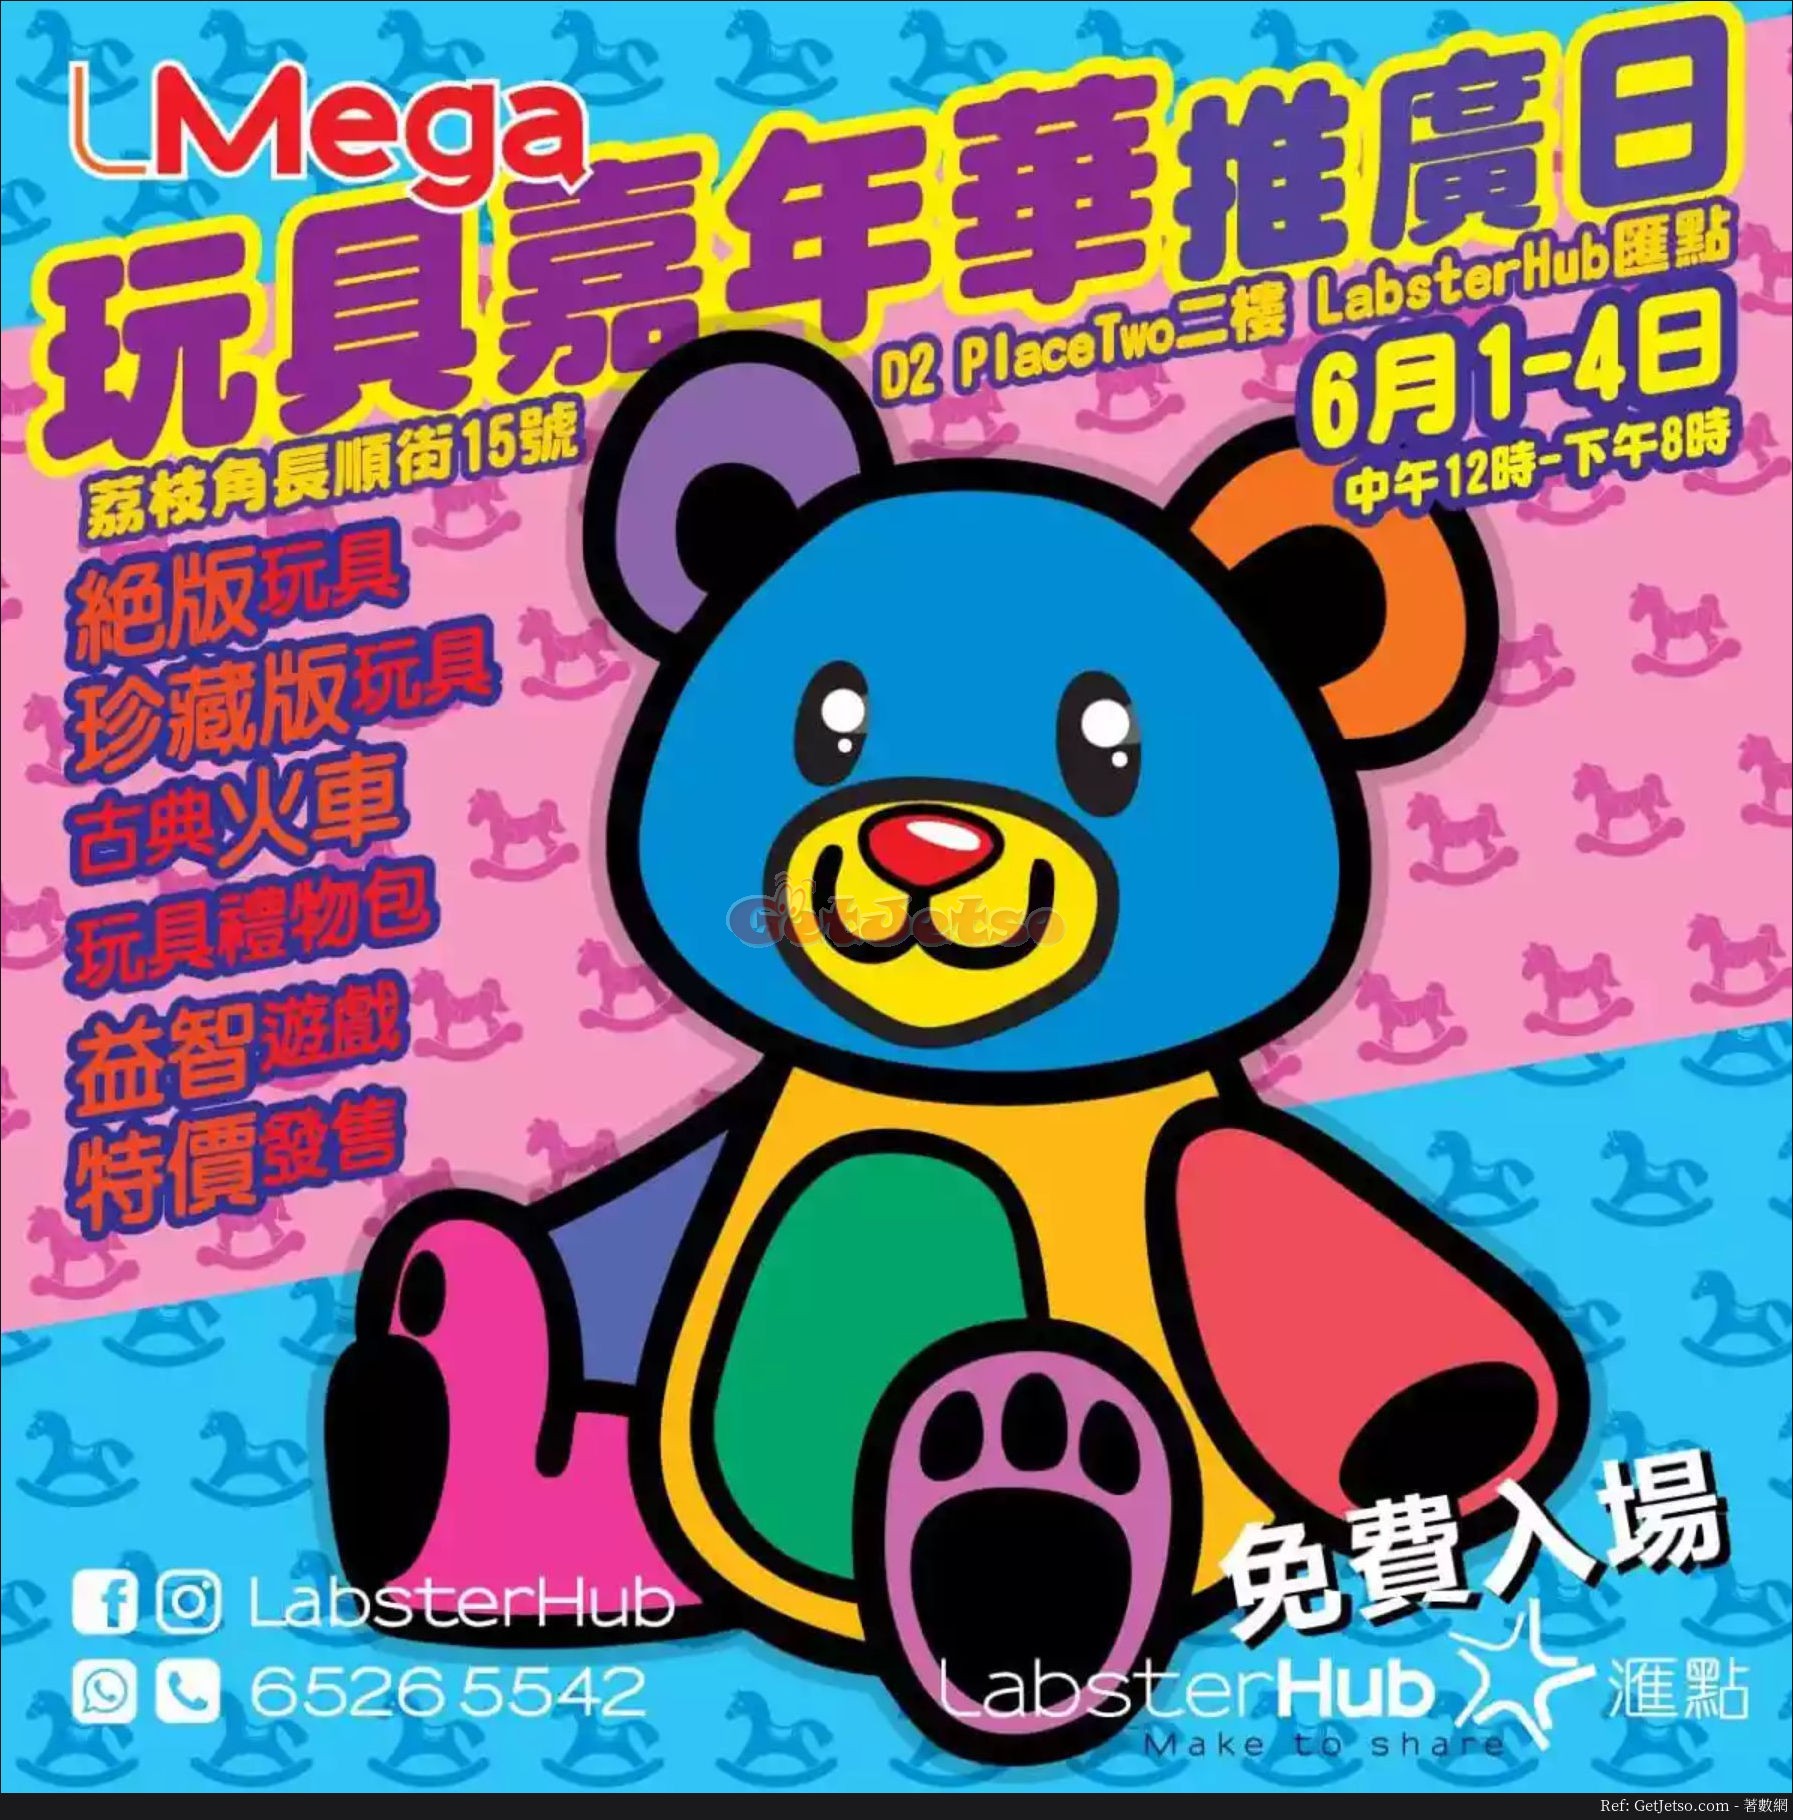 L Mega 玩具嘉年華推廣日優惠(至18年6月4日)圖片1